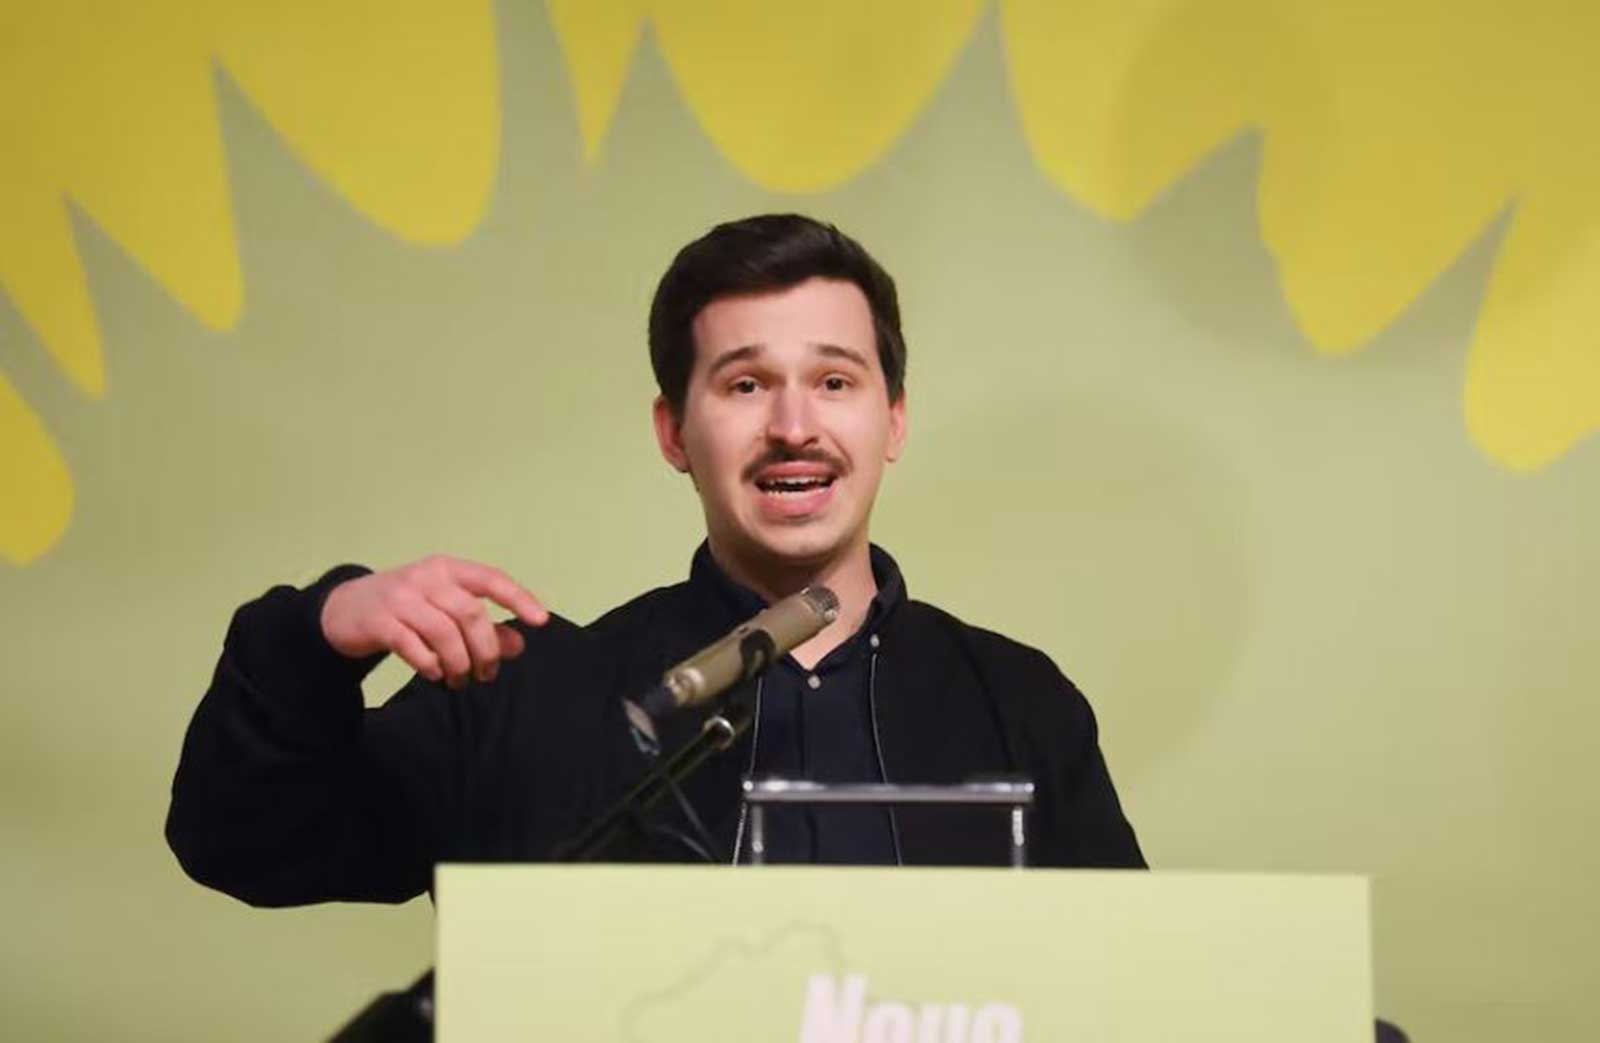 طالب جامعي يقود حزب الخضر في تورينغن الألمانية